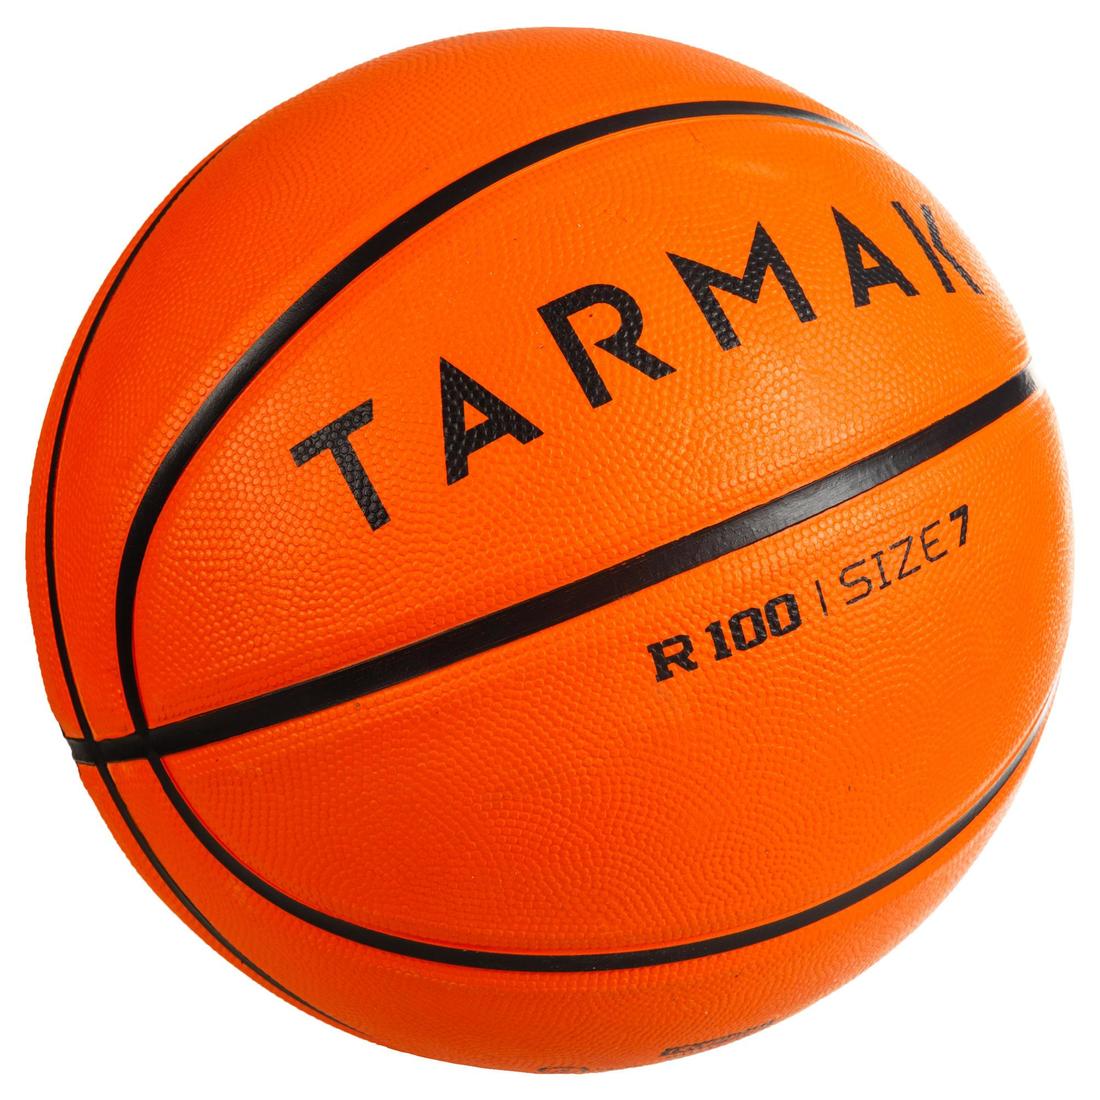 TARMAK(ターマック) バスケットボール 初心者向 R100 7号 大人用